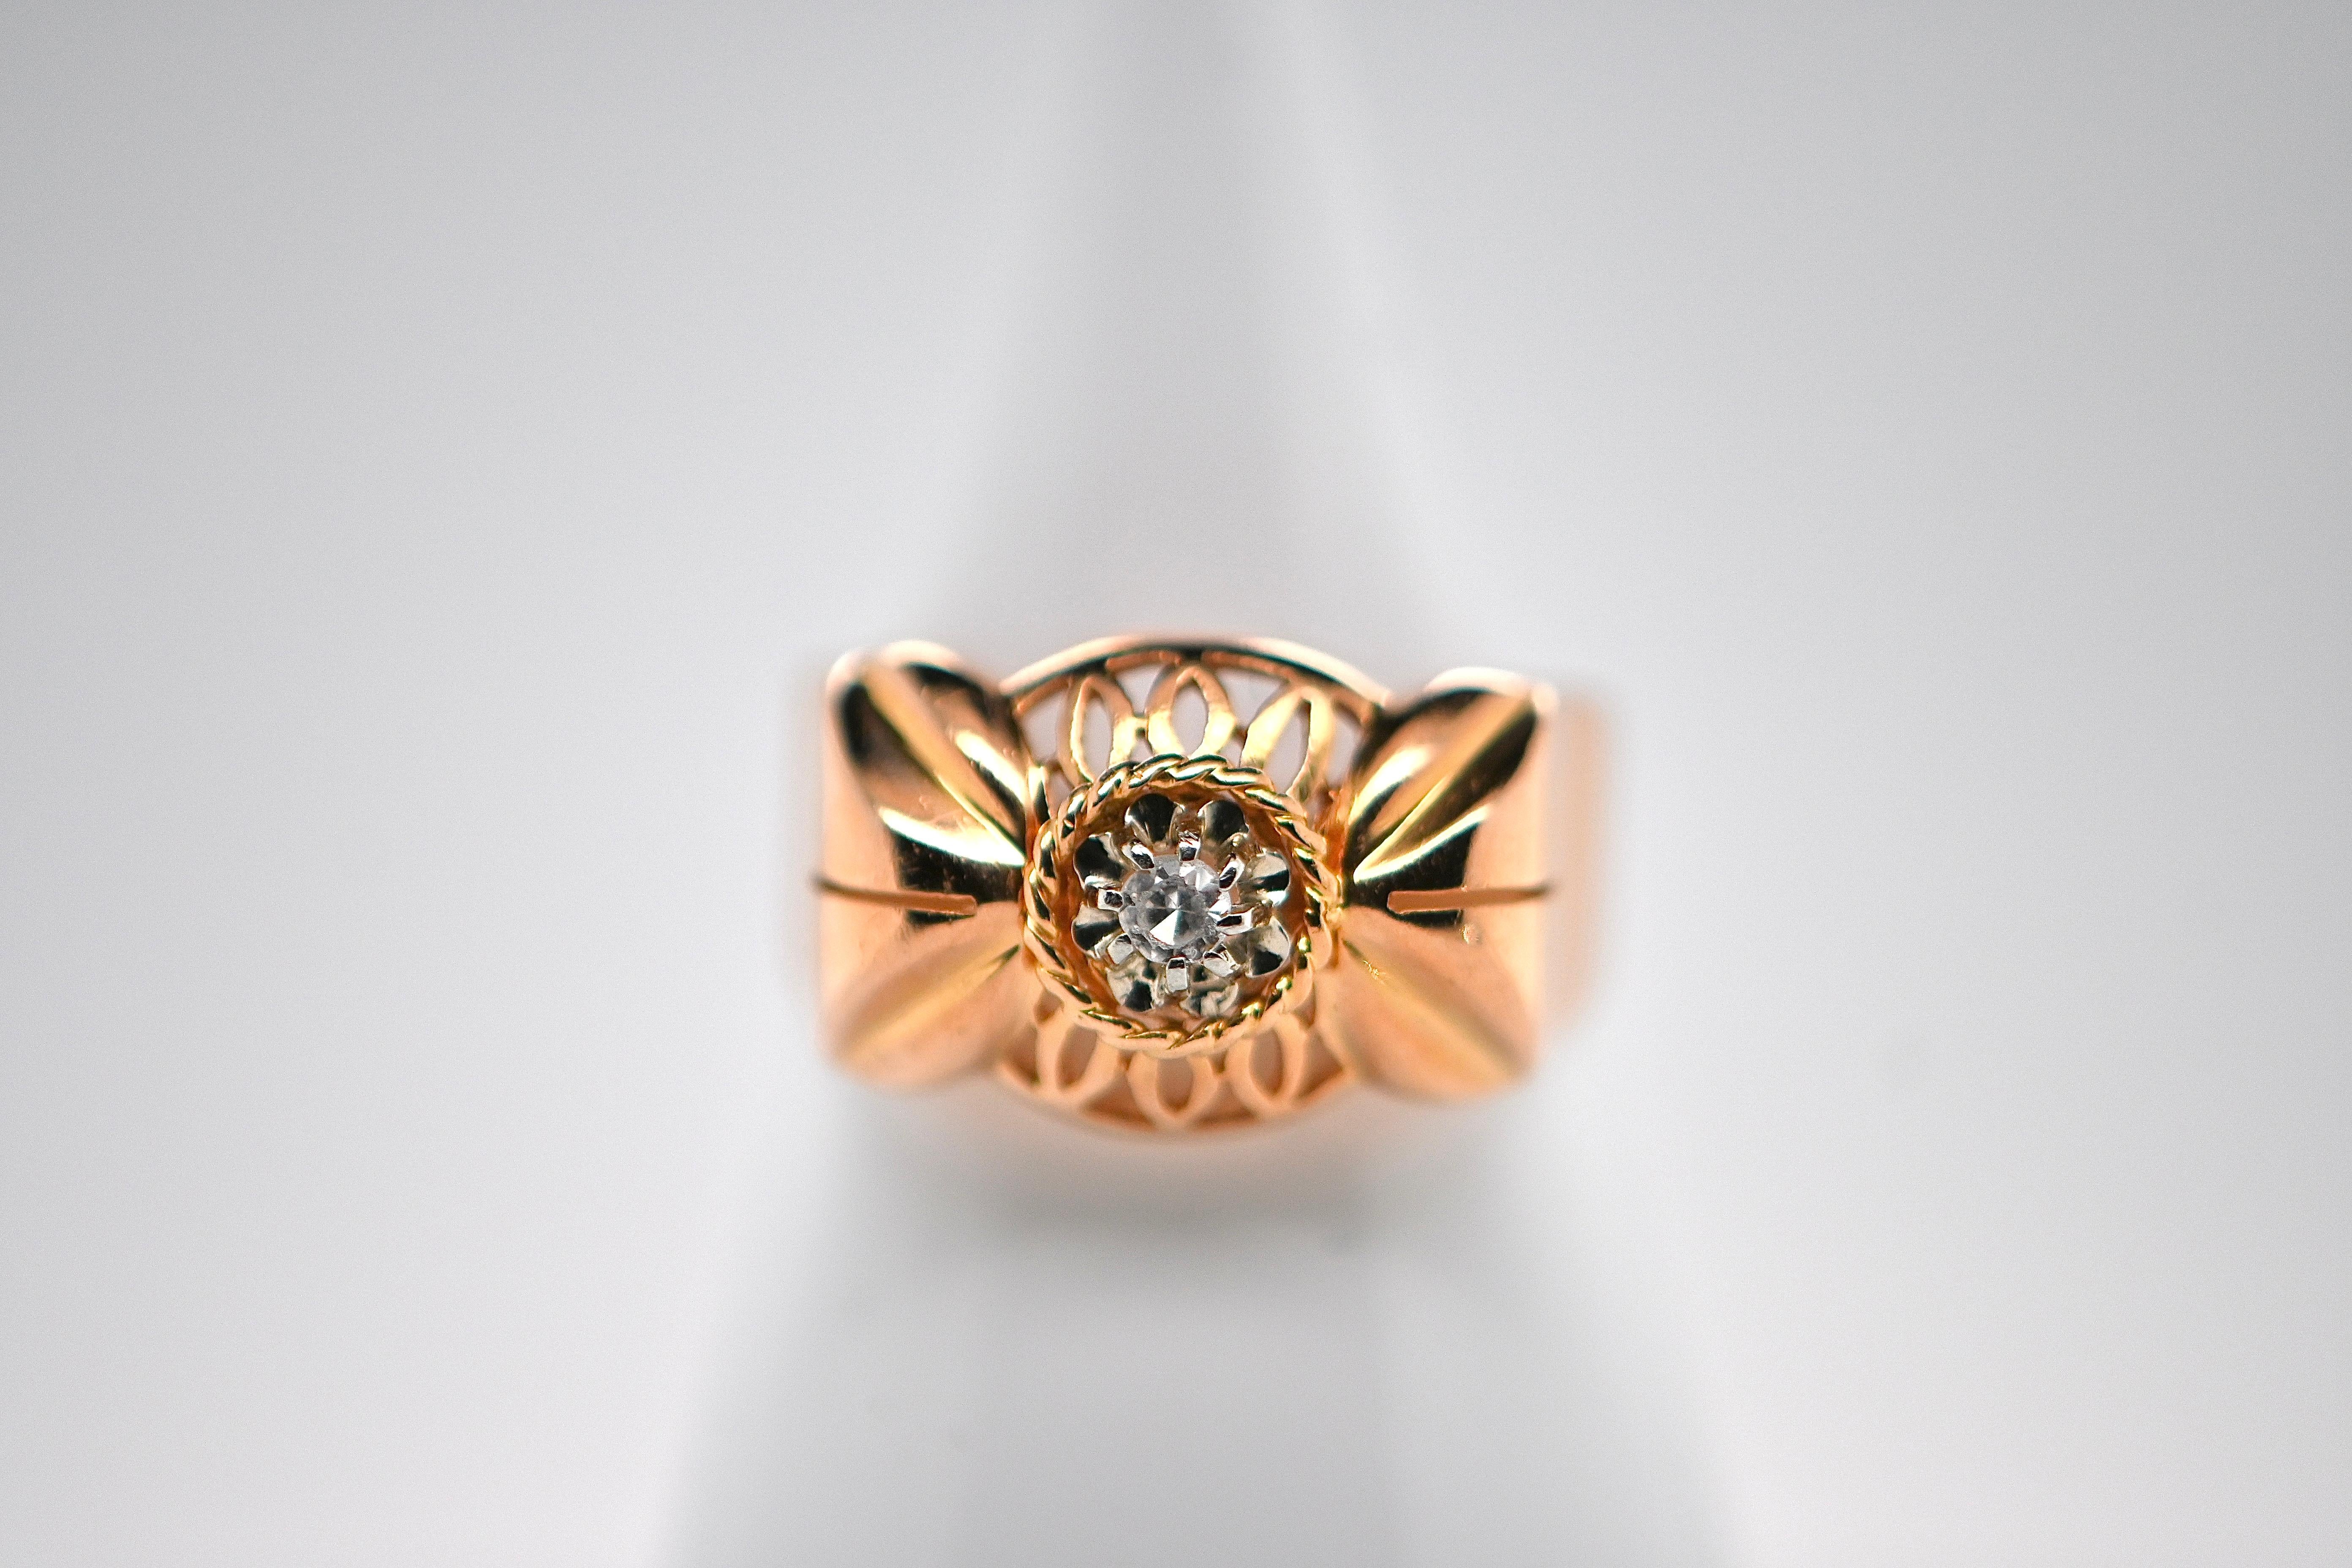 Entdecken Sie diesen prächtigen Retro-Ring, ein wahrer Schatz aus der Zeit des Art déco der 1950er Jahre. Mit seinem zeitlosen Design und seiner fesselnden Ästhetik verkörpert dieser Ring die Eleganz und Raffinesse der ikonischen Kunstbewegung